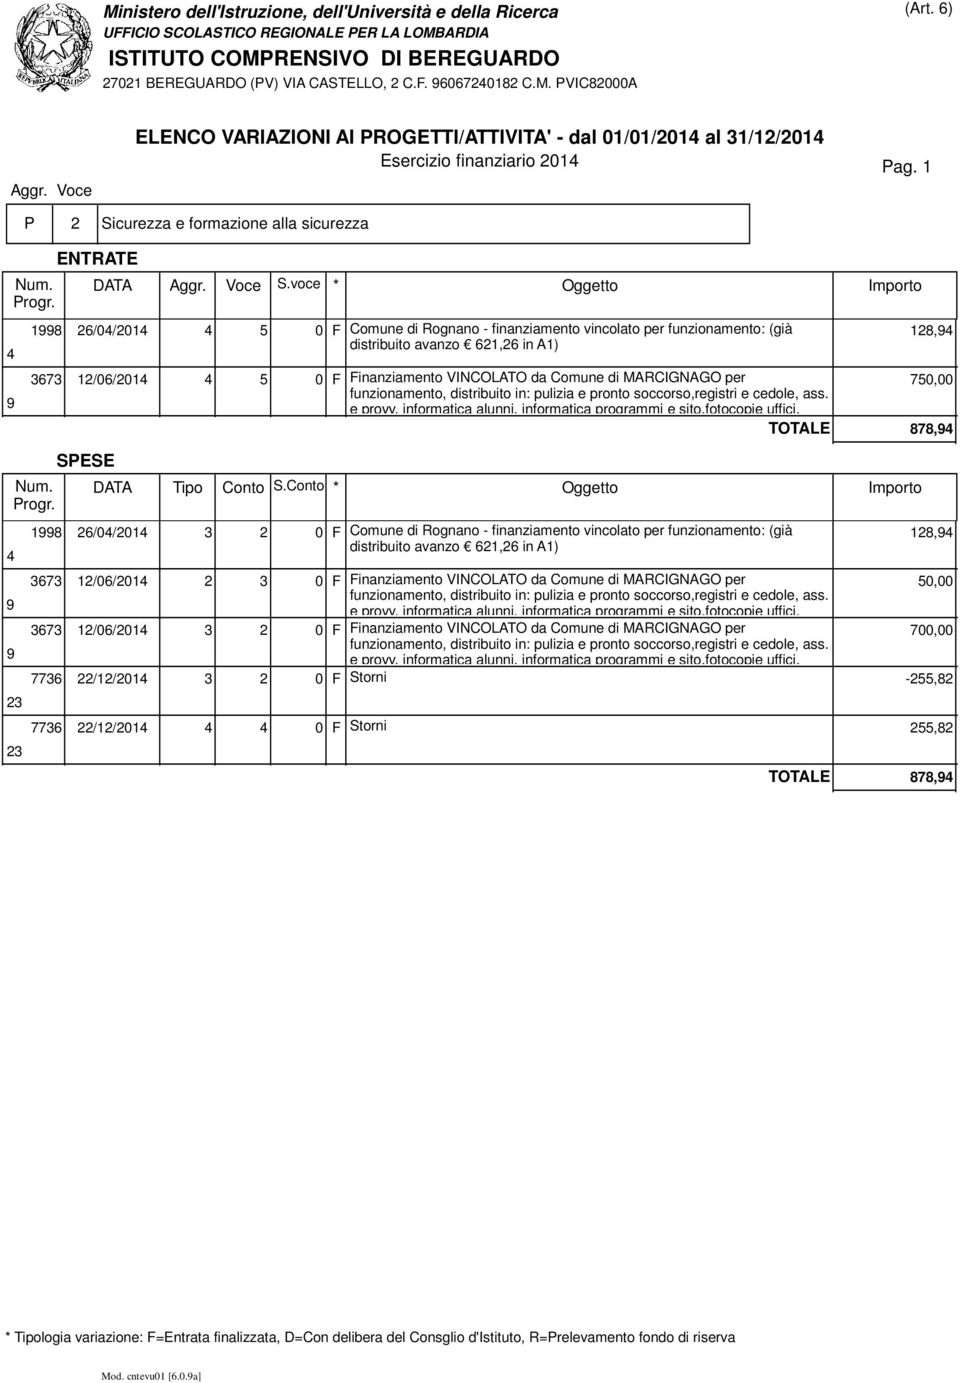 Finanziamento VINCOLATO da Comune di MARCIGNAGO per 70,00 TOTALE 878,4 26/04/2014 3 2 0 F Comune di Rognano - finanziamento vincolato per funzionamento: (già 128,4